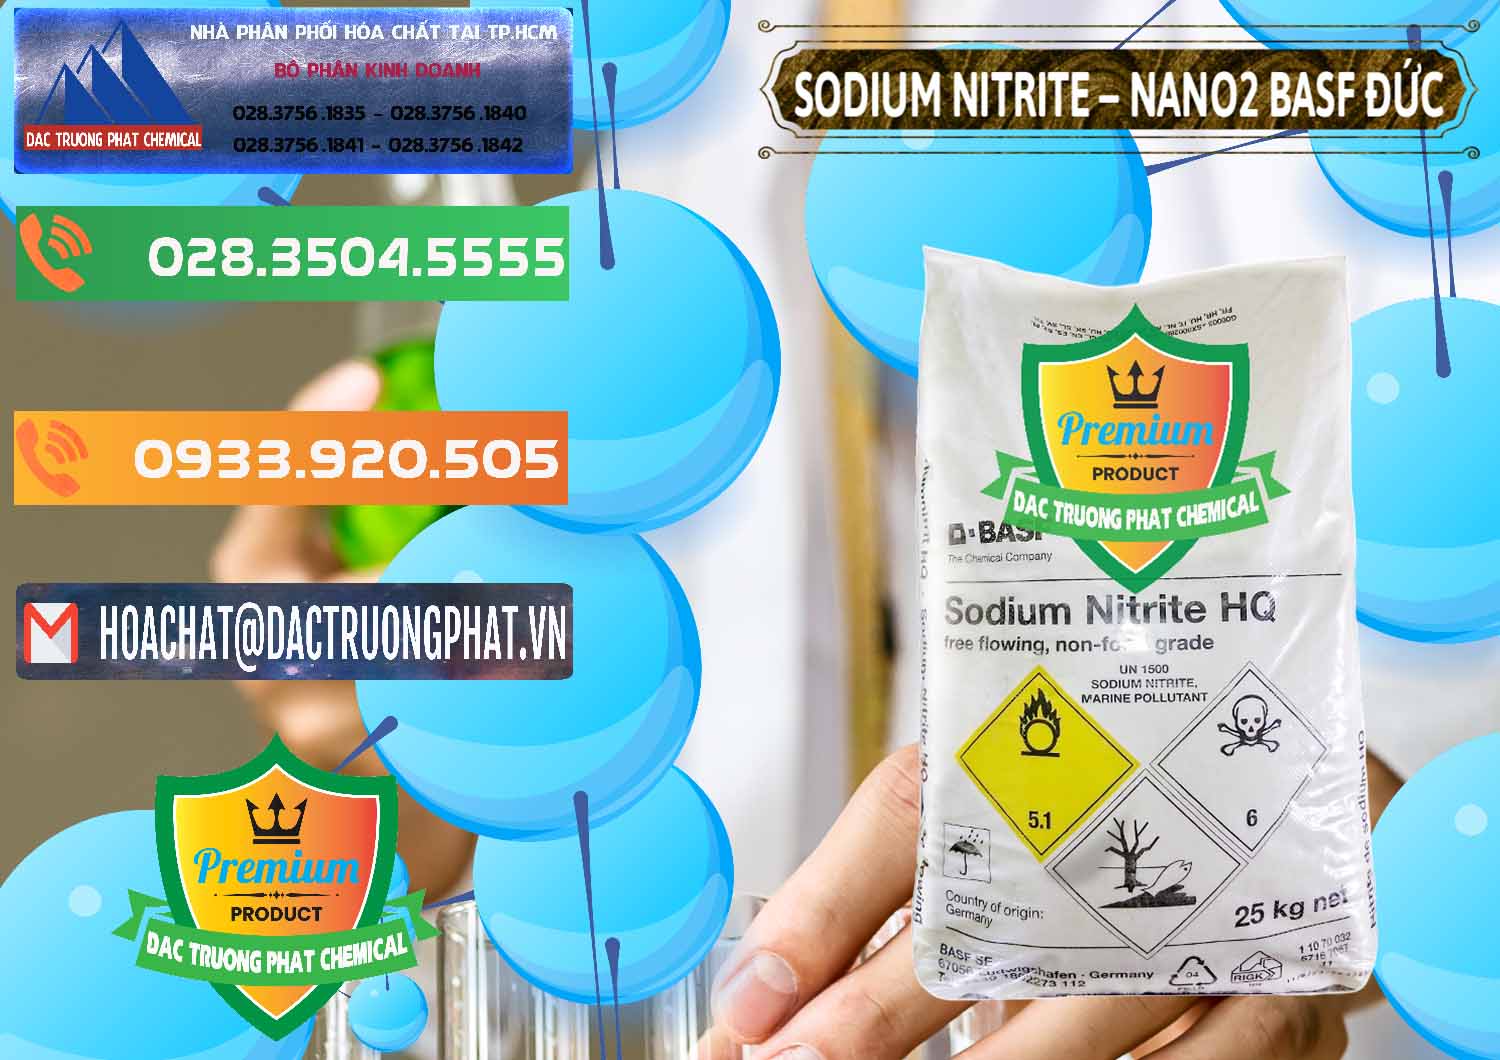 Cty cung cấp ( bán ) Sodium Nitrite - NANO2 Đức BASF Germany - 0148 - Nơi chuyên kinh doanh và phân phối hóa chất tại TP.HCM - hoachatxulynuoc.com.vn